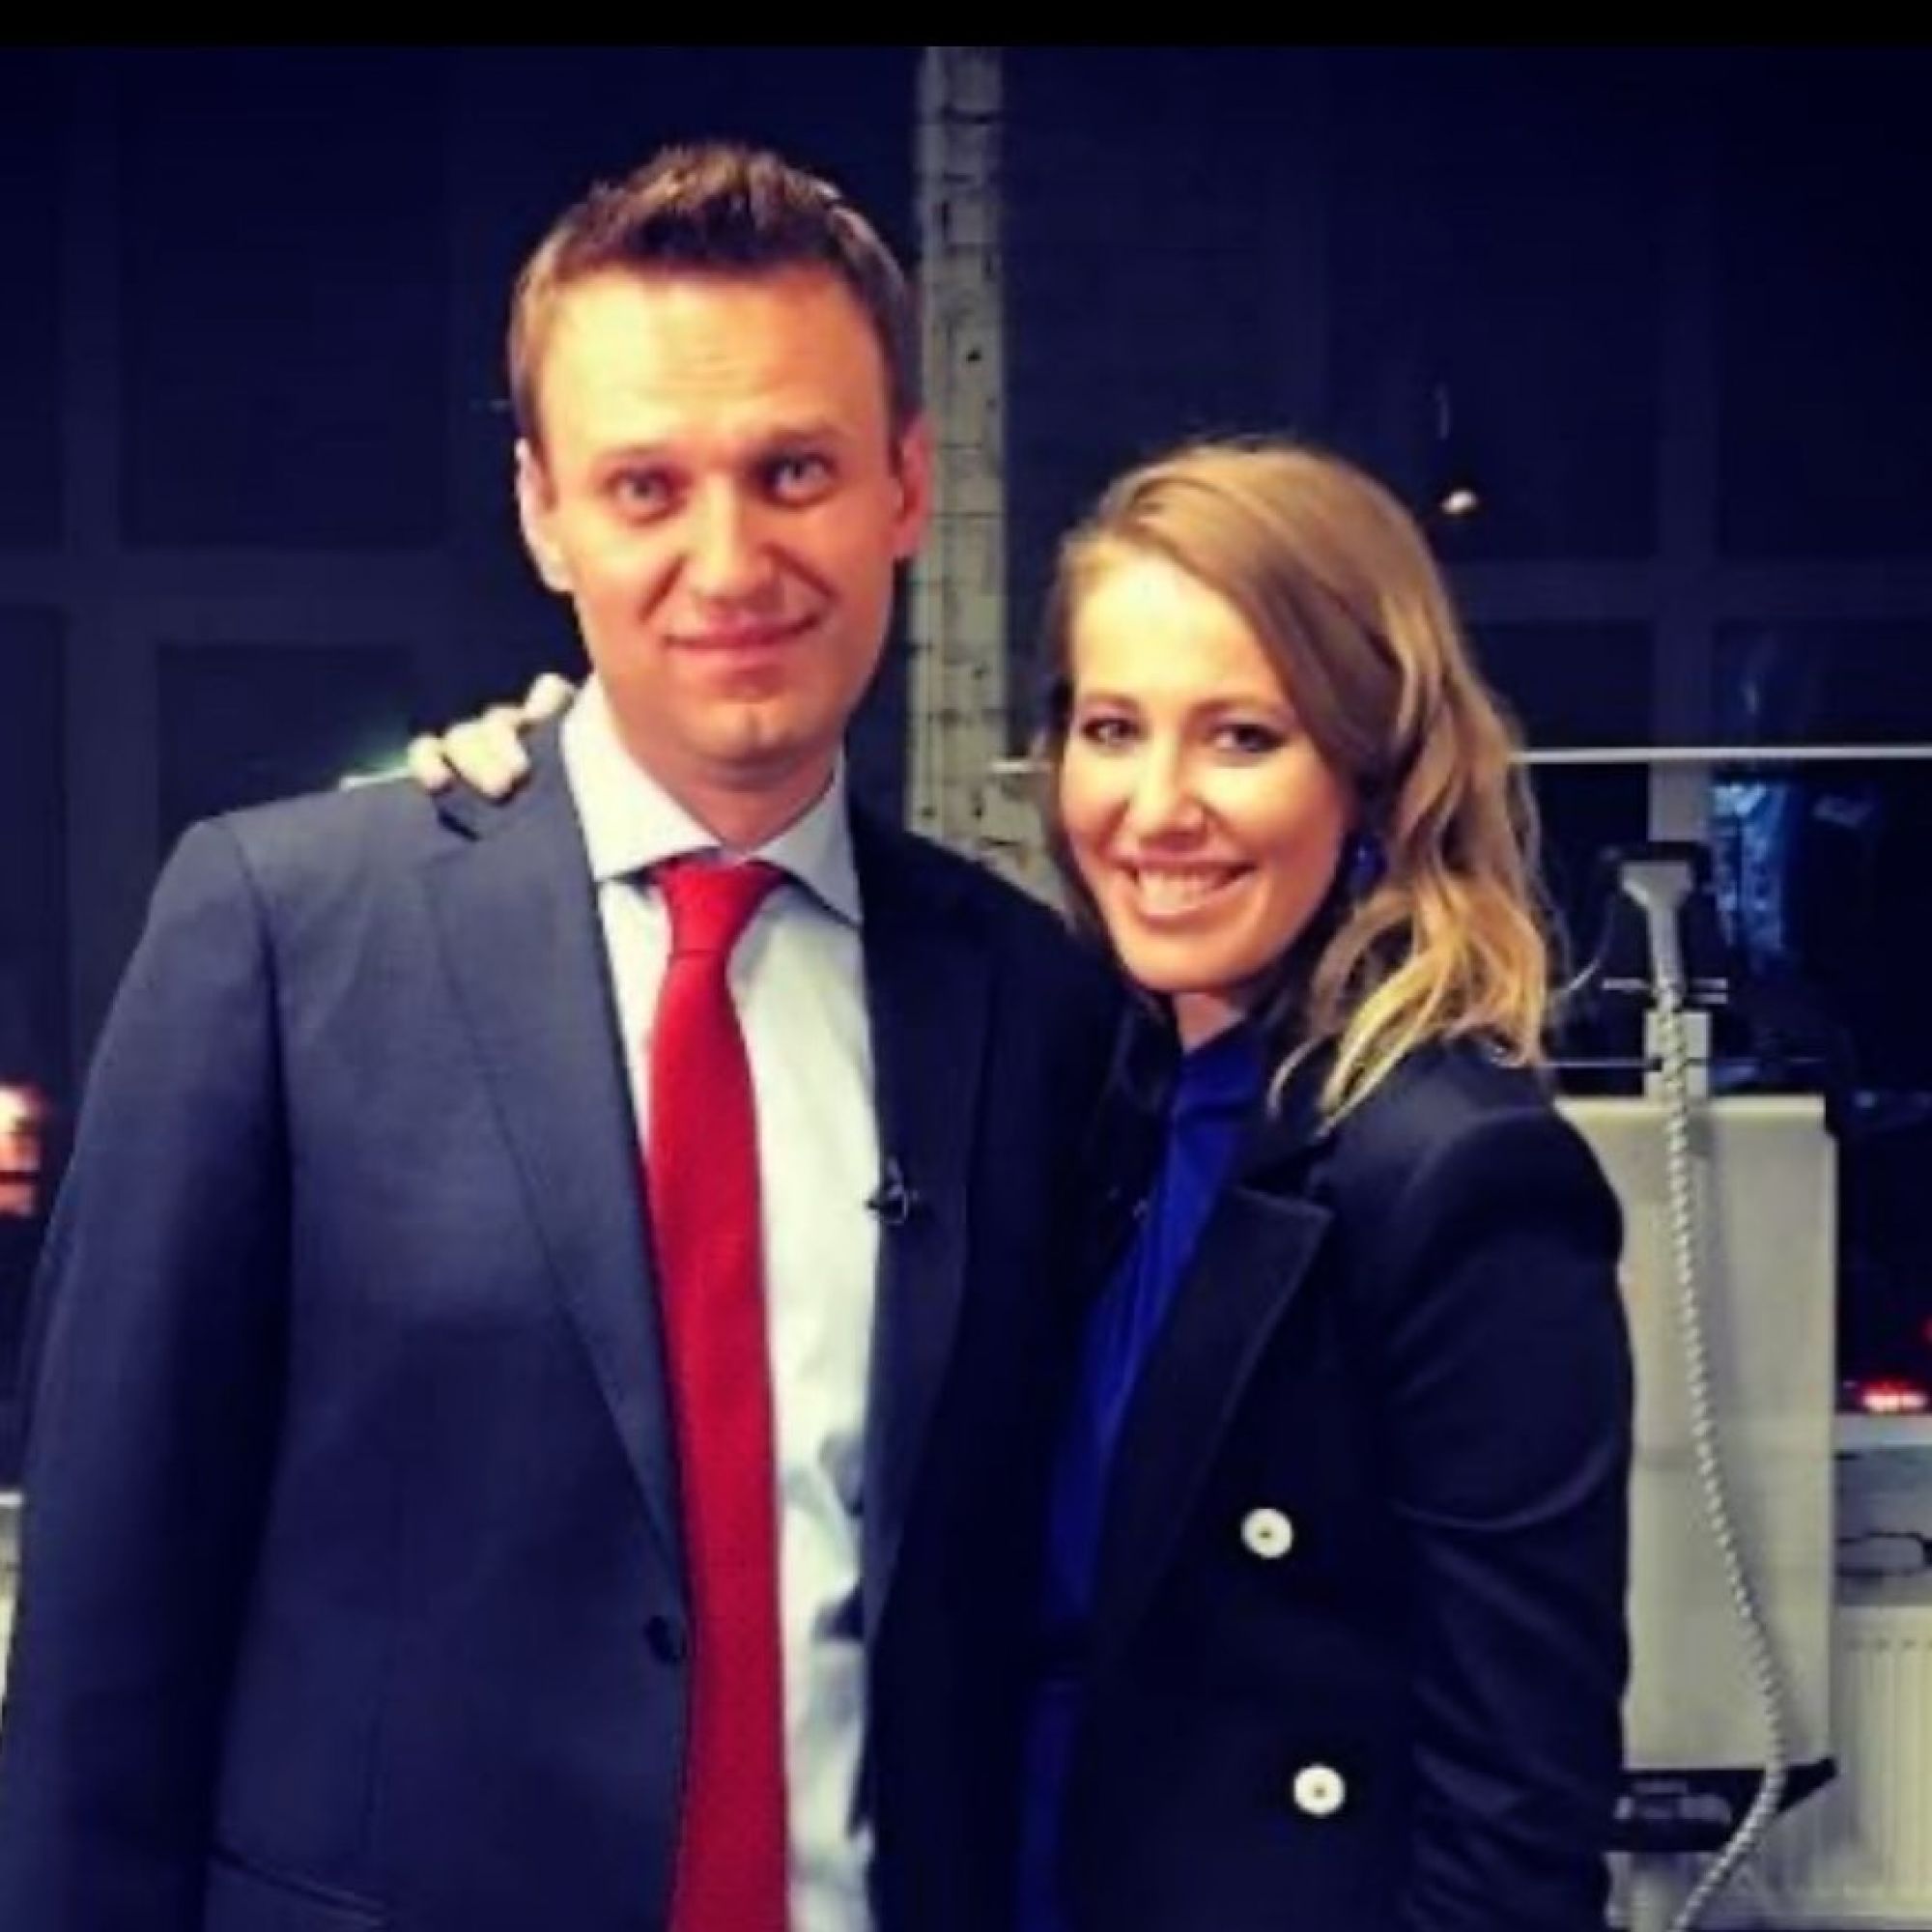 Ксения Собчак отреагировала на госпитализацию Алексея Навального